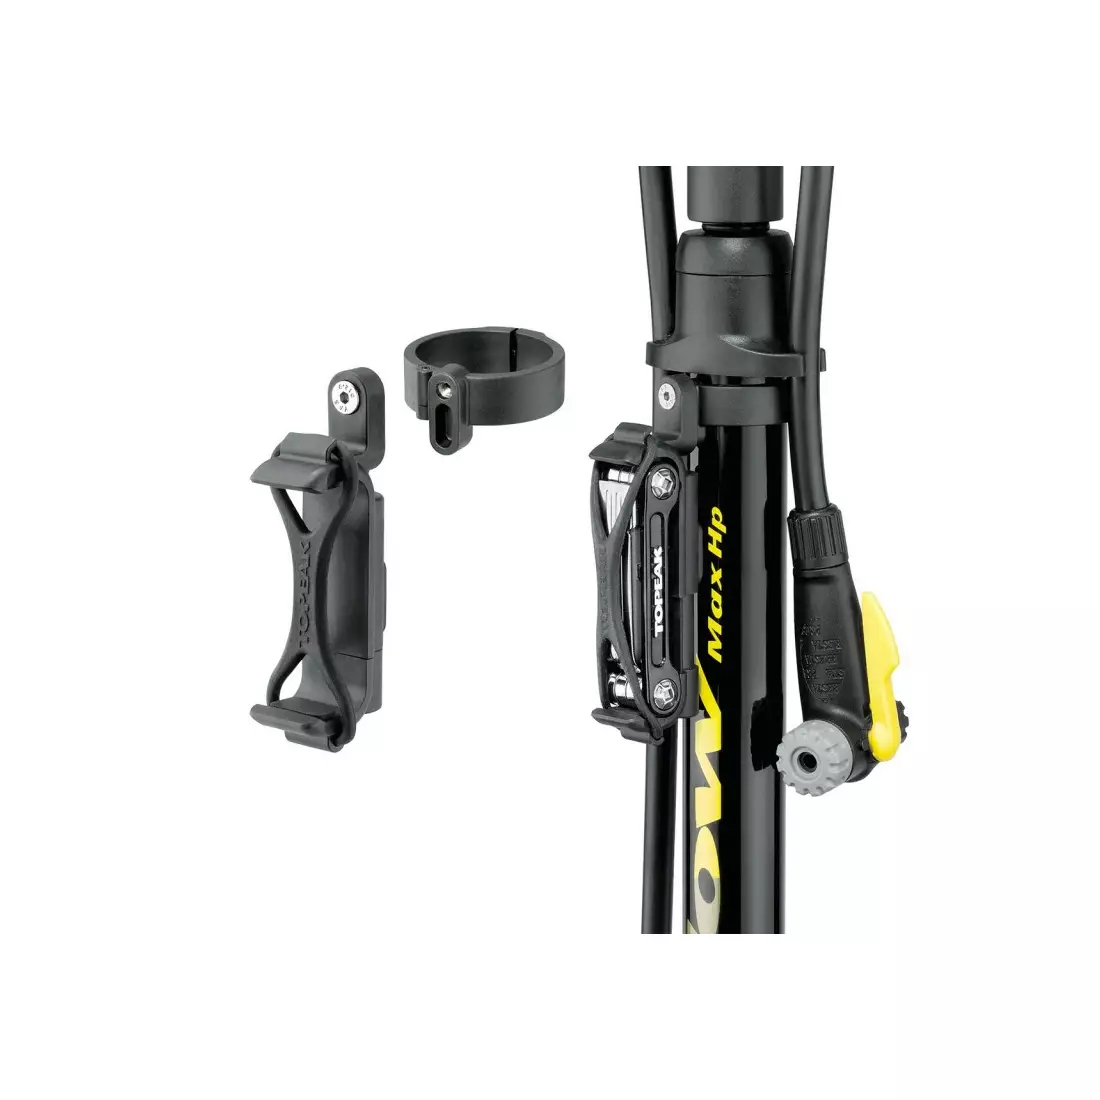 TOPEAK MINI TOOL CARRIER (floor pump tool holder) T-TRK-JB20